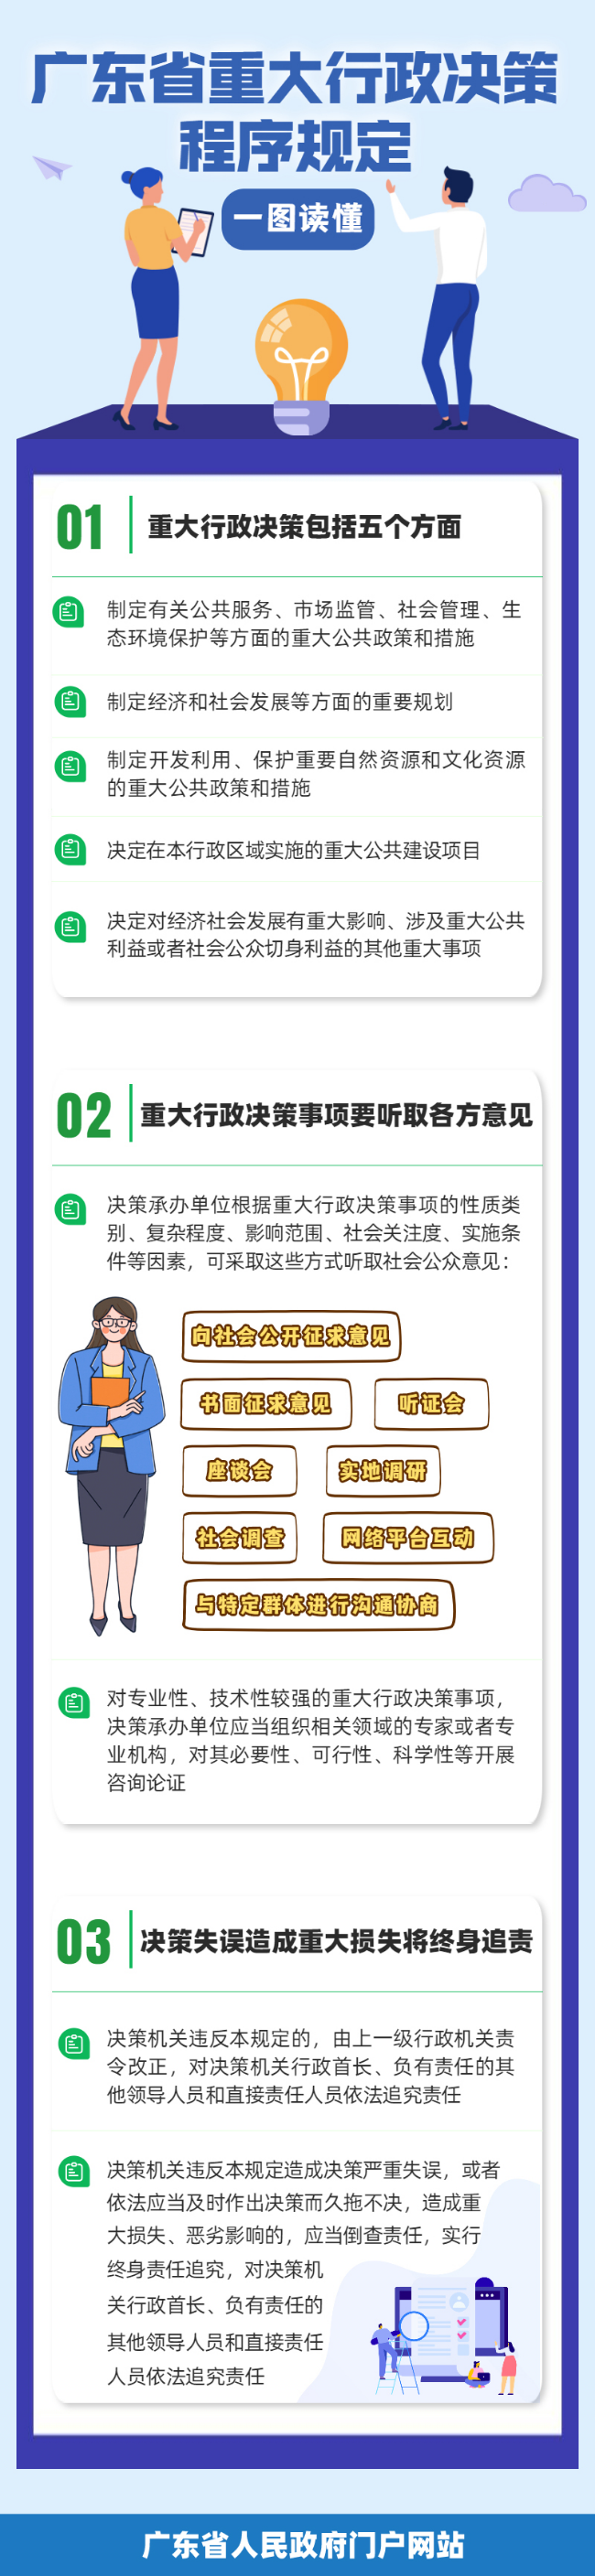 一图读懂广东省重大行政决策程序规定.png